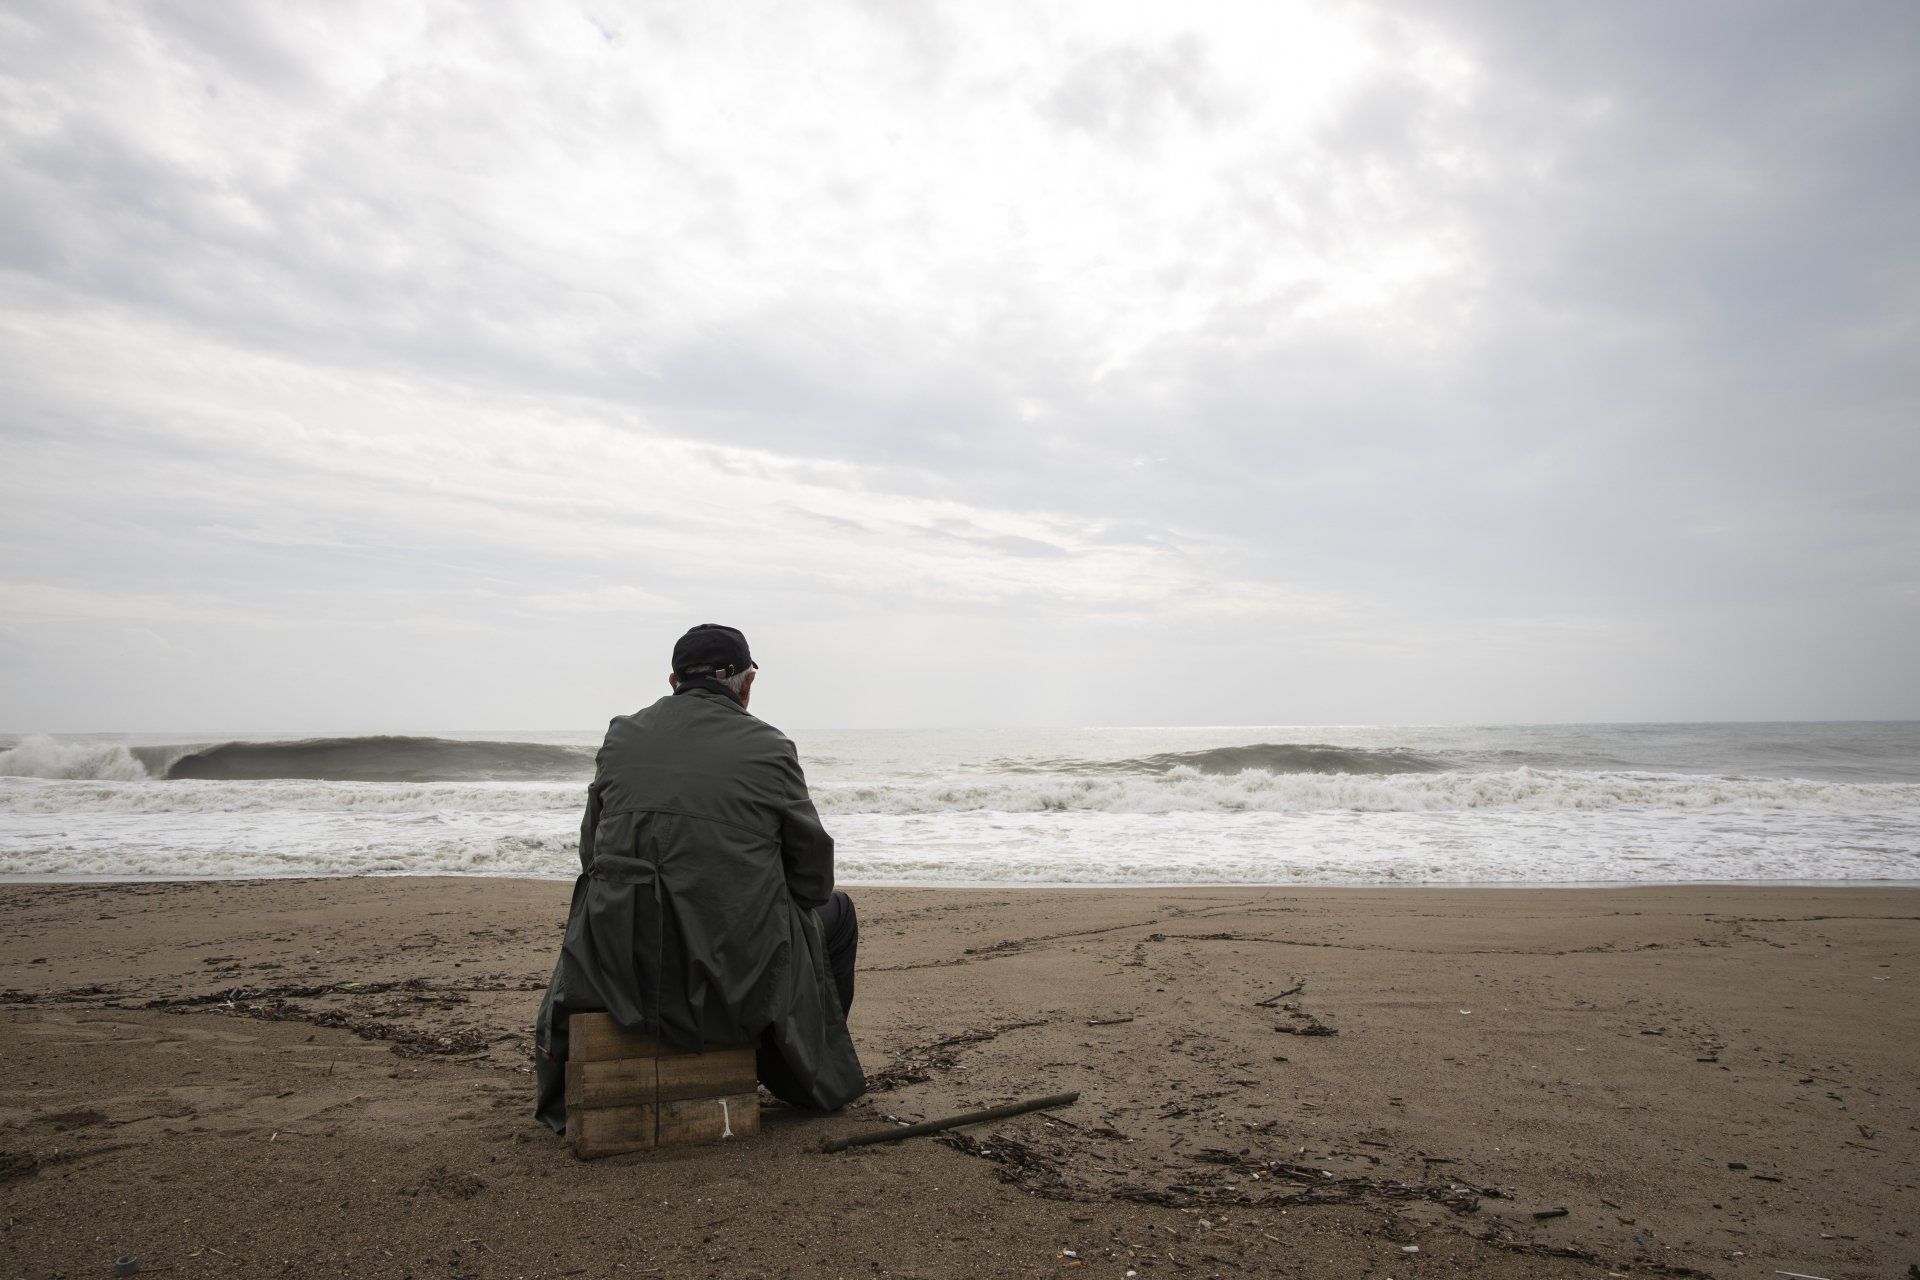 Man sitting alone on a sandy beach